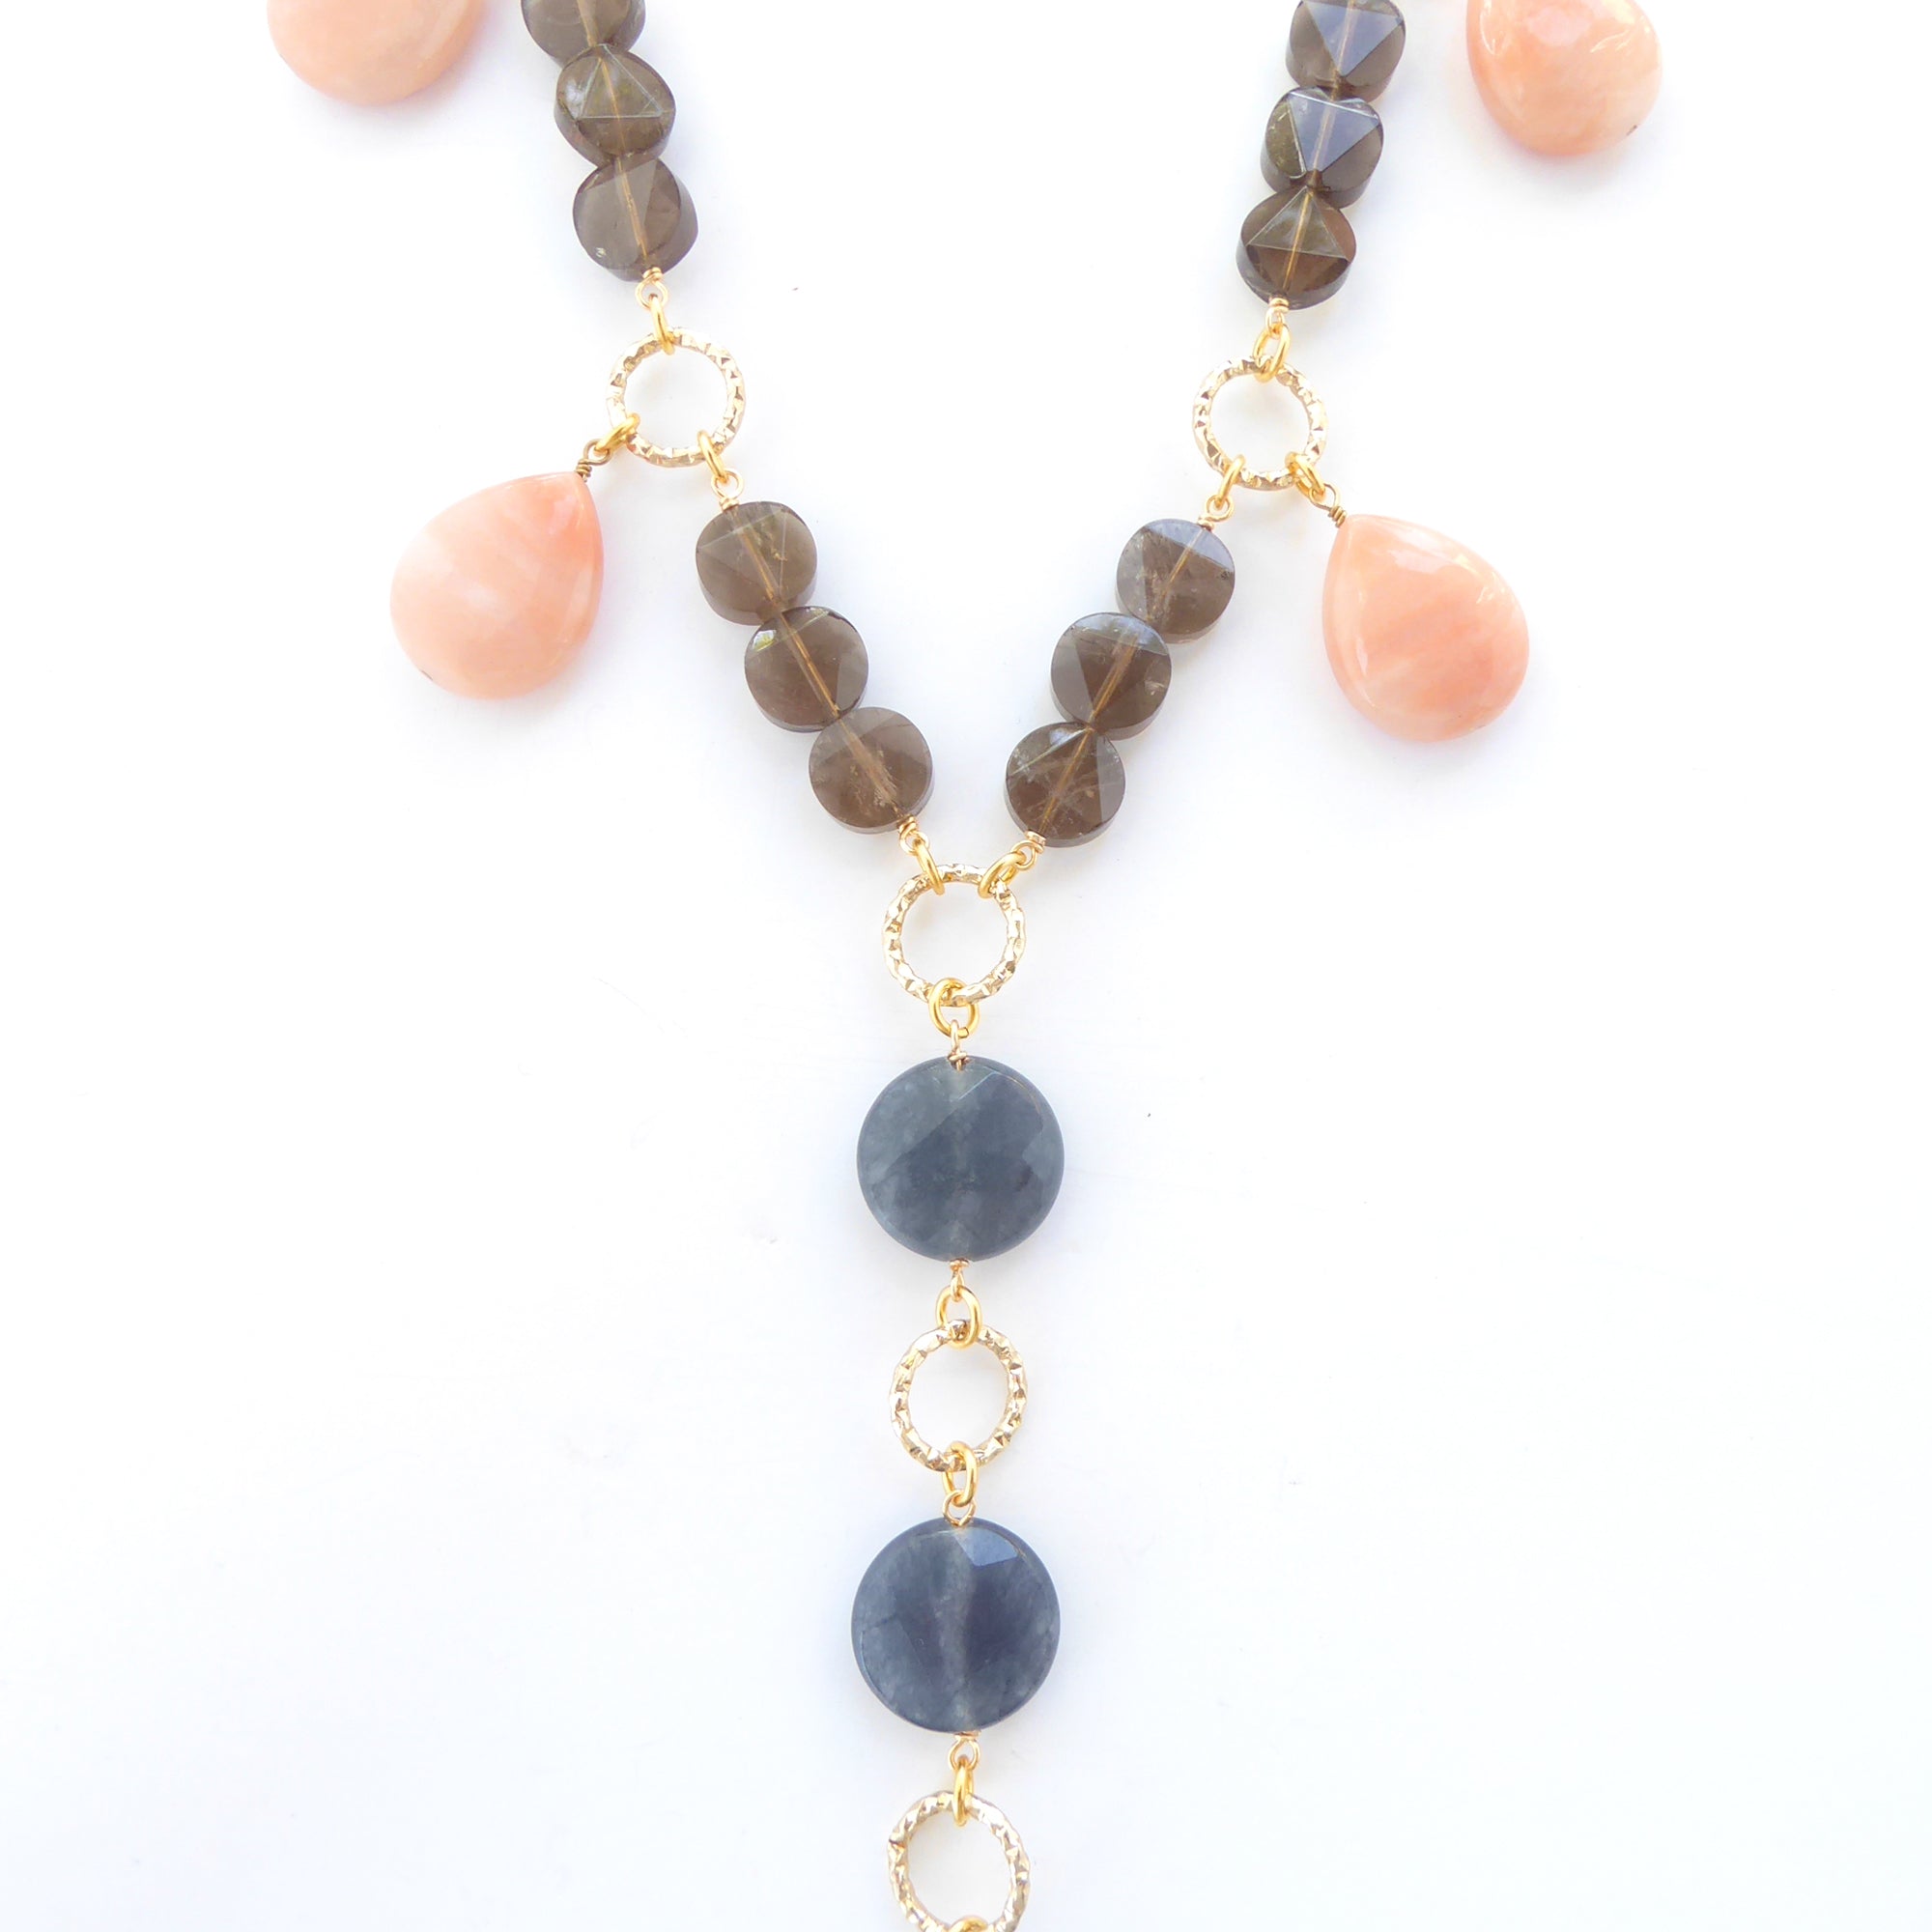 Devana necklace by Jenny Dayco 5